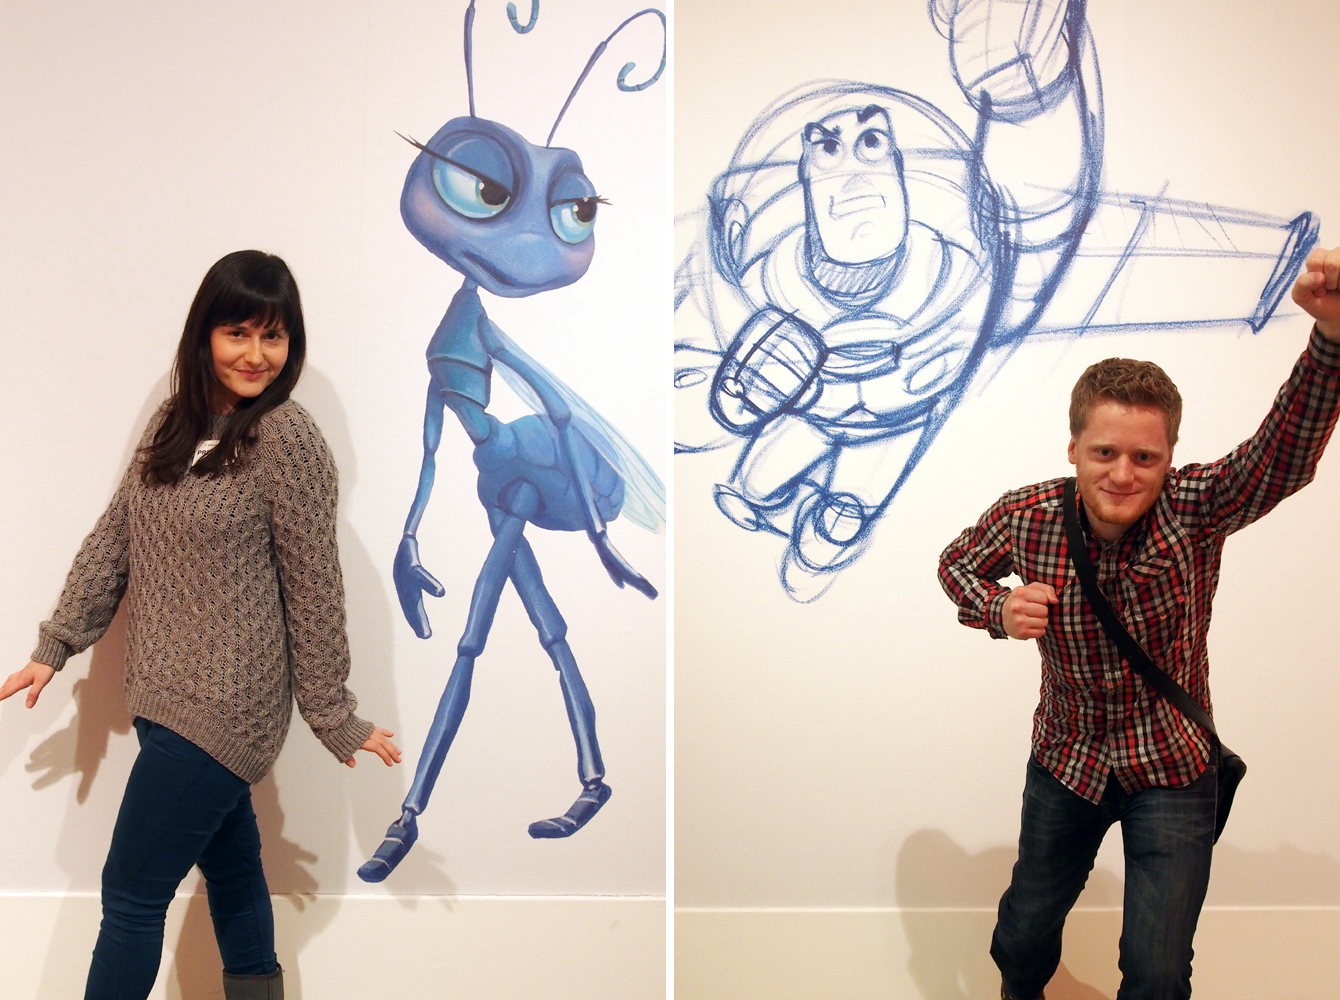 Ausstellung "Pixar - 25 Years of Animation" - Atta von "Das große Krabbeln" und Buzz Lightyear von "Toy Story" - Rechte für die abgebildeten Figuren und Kunstwerke liegen bei Pixar, Bildrechte bei "Fee ist mein Name"